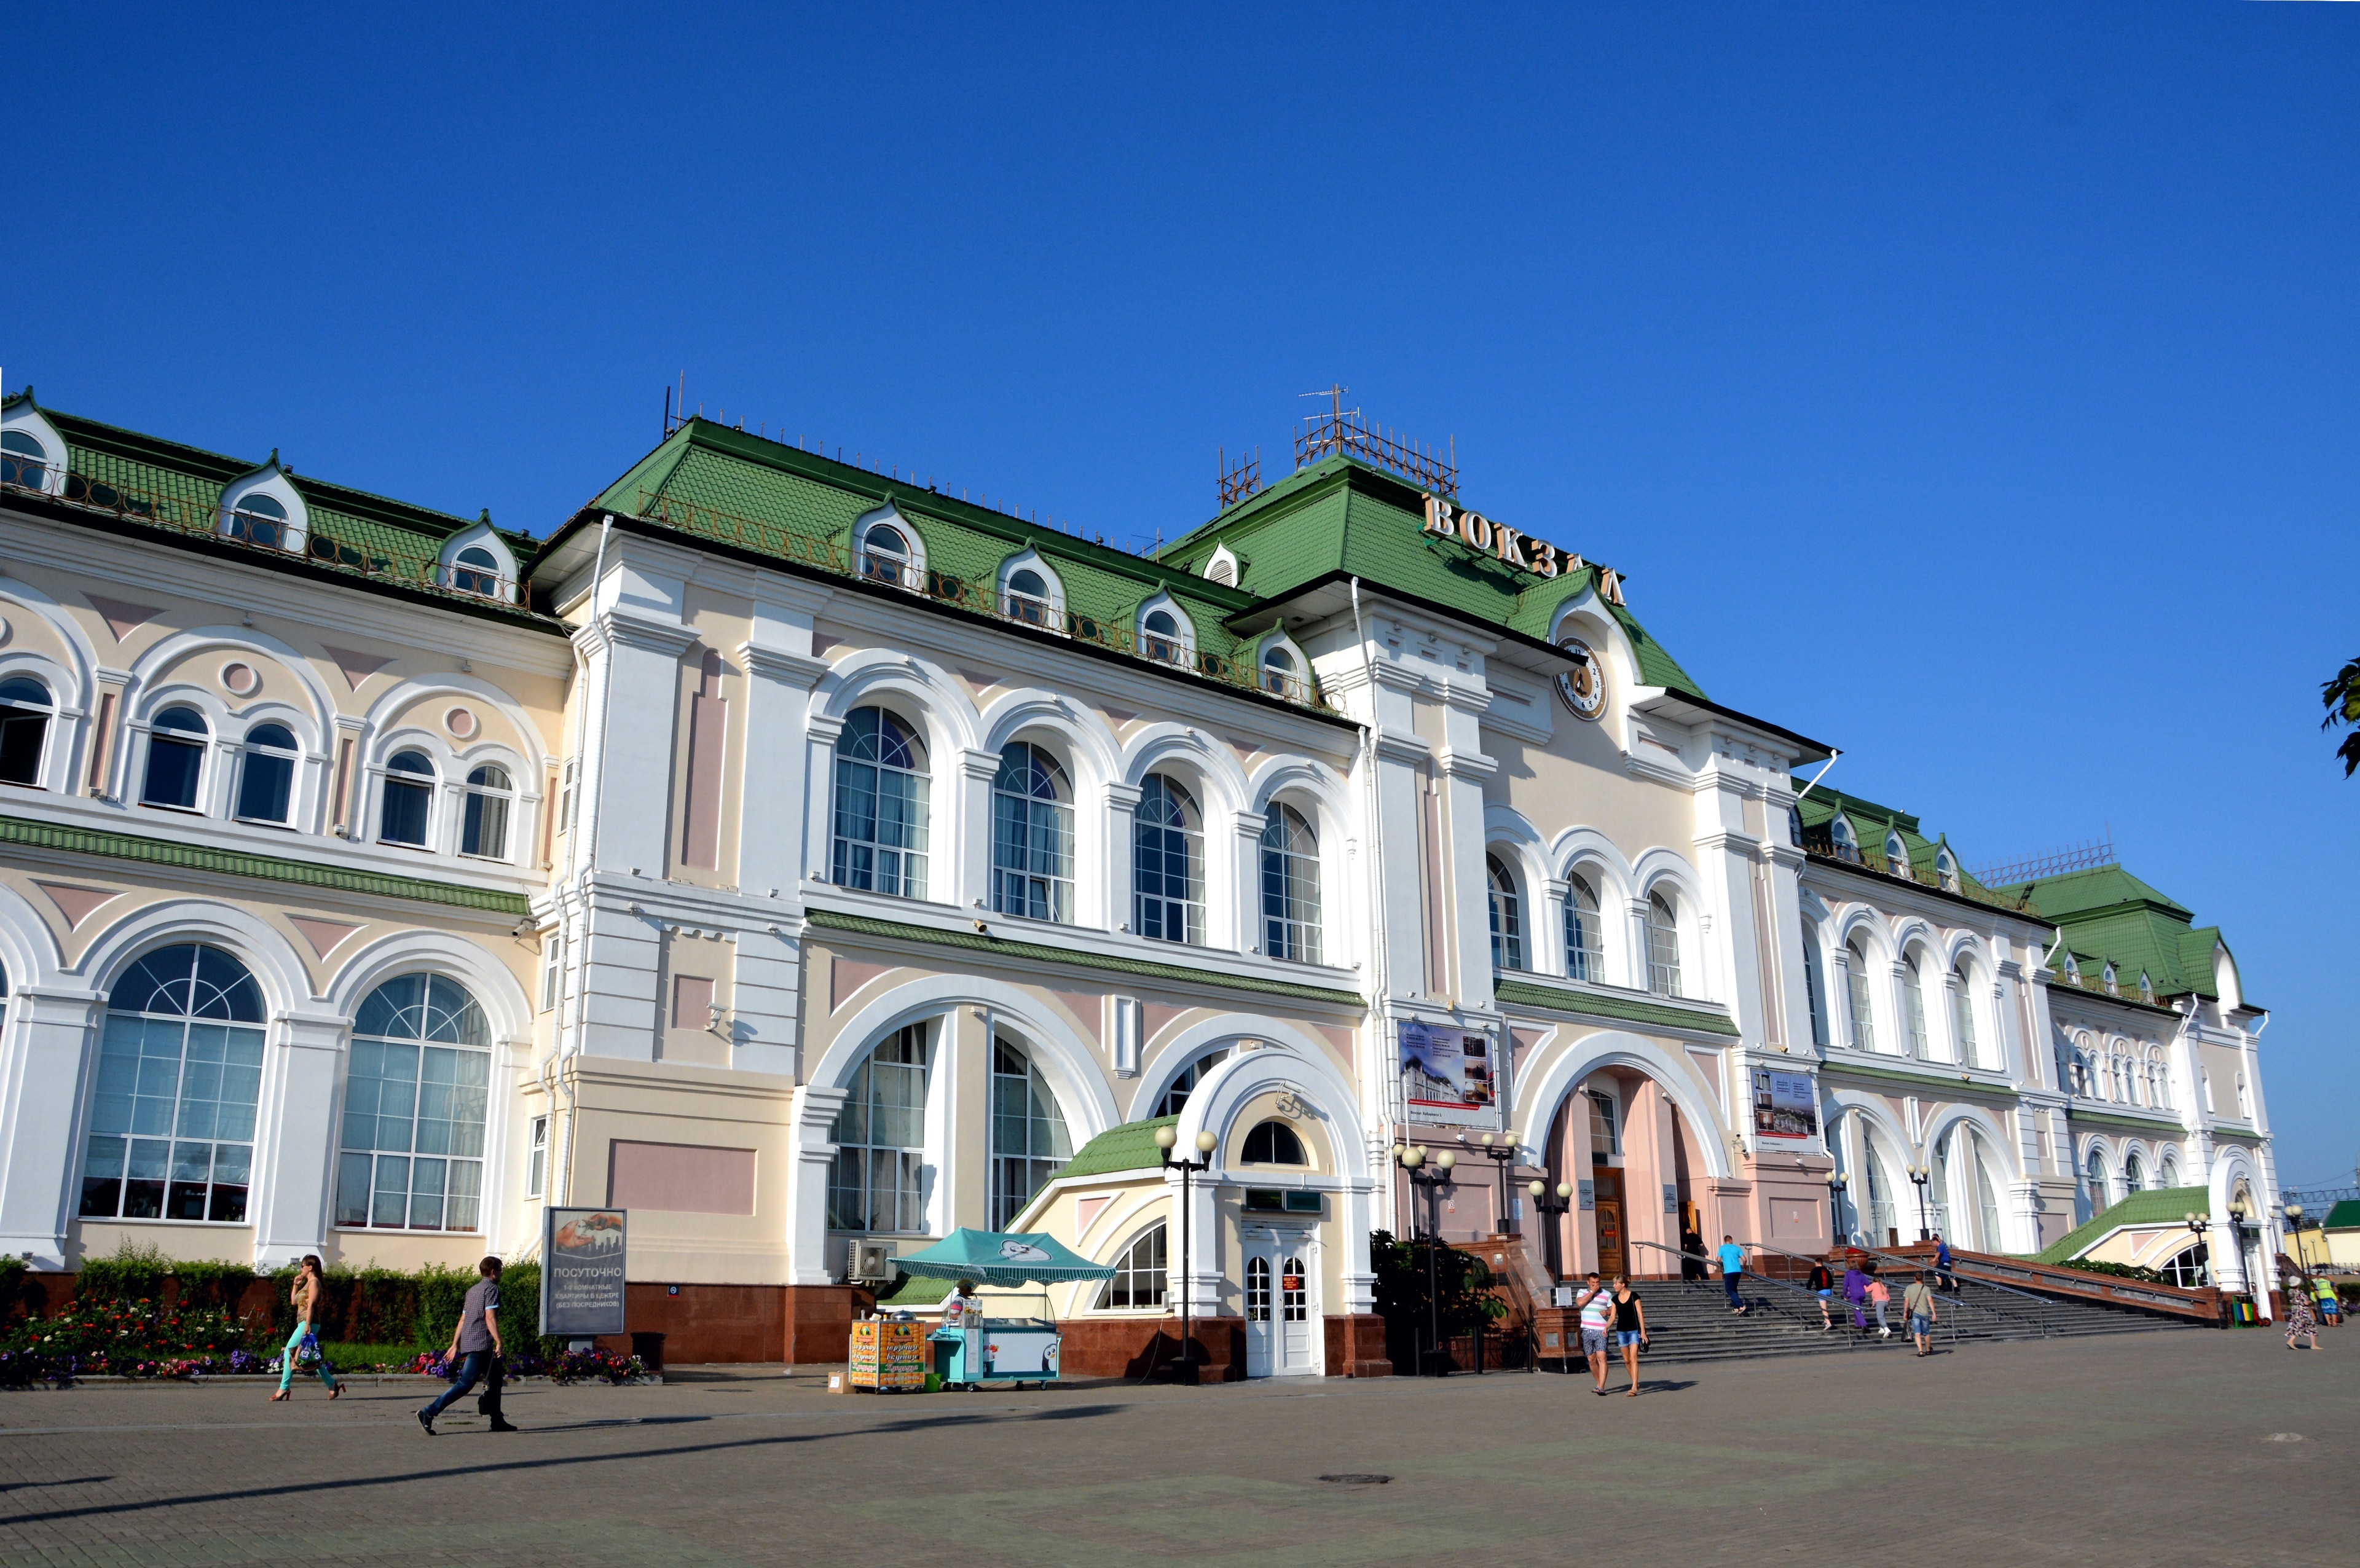 Visite Krai de Khabarovsk: o melhor de Krai de Khabarovsk, Rússia